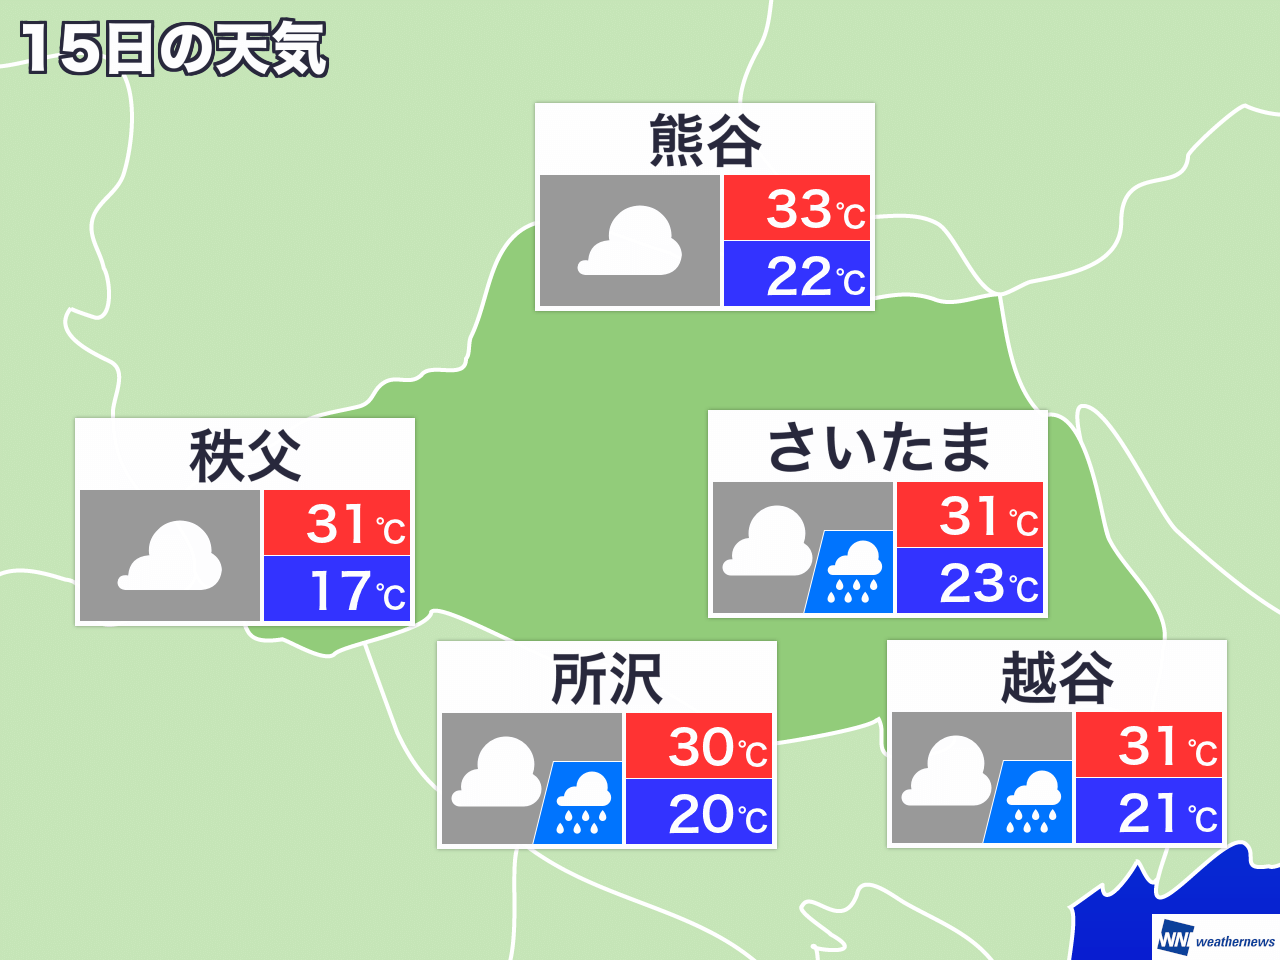 8月11日 水 埼玉県の今日の天気 ウェザーニュース